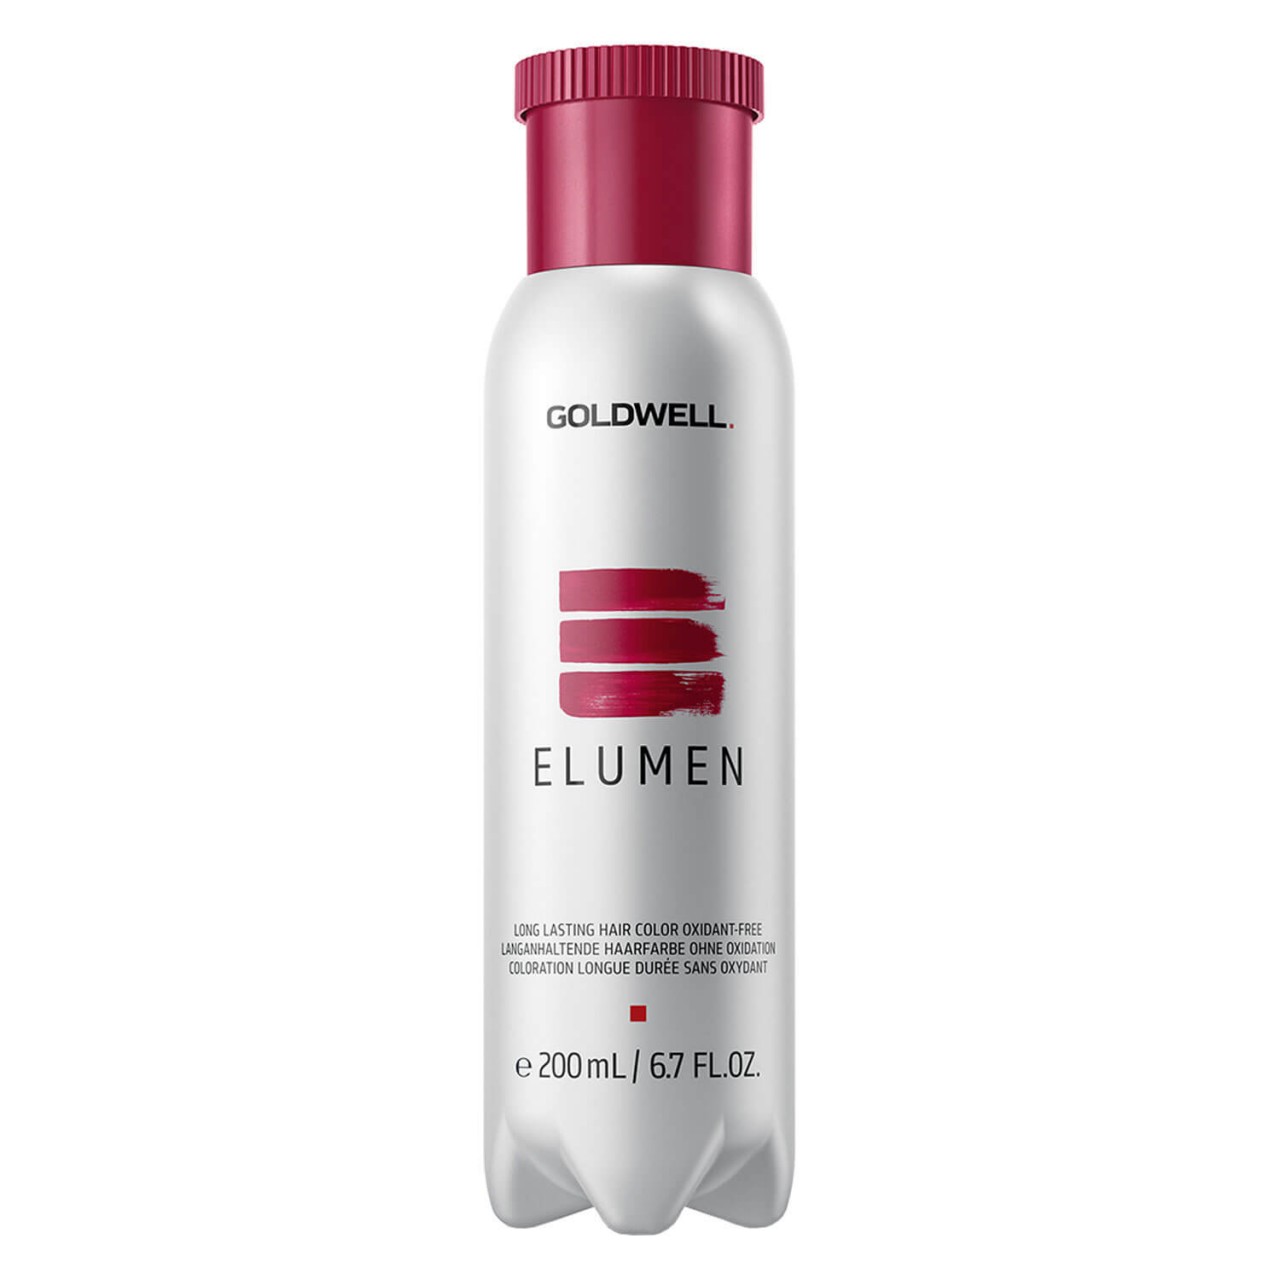 Elumen - Clear von Goldwell